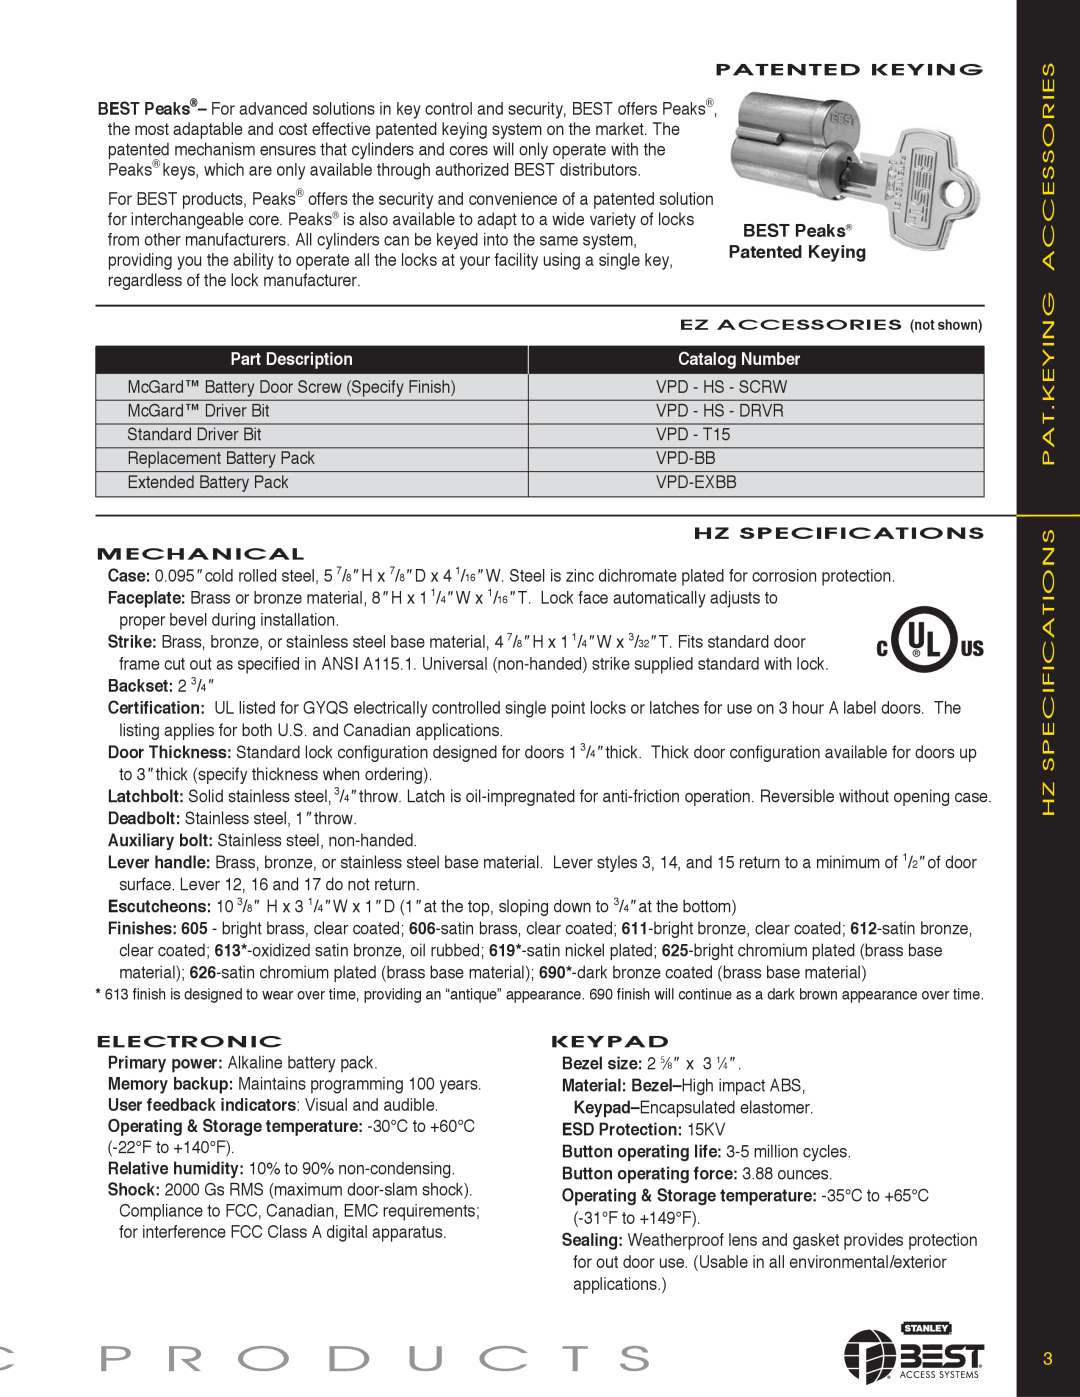 Stanley Black & Decker KEYPAD EZ LOCKS manual C P R O D U C T S, Hz Specifications Pat.Keying Accessories, Part Description 